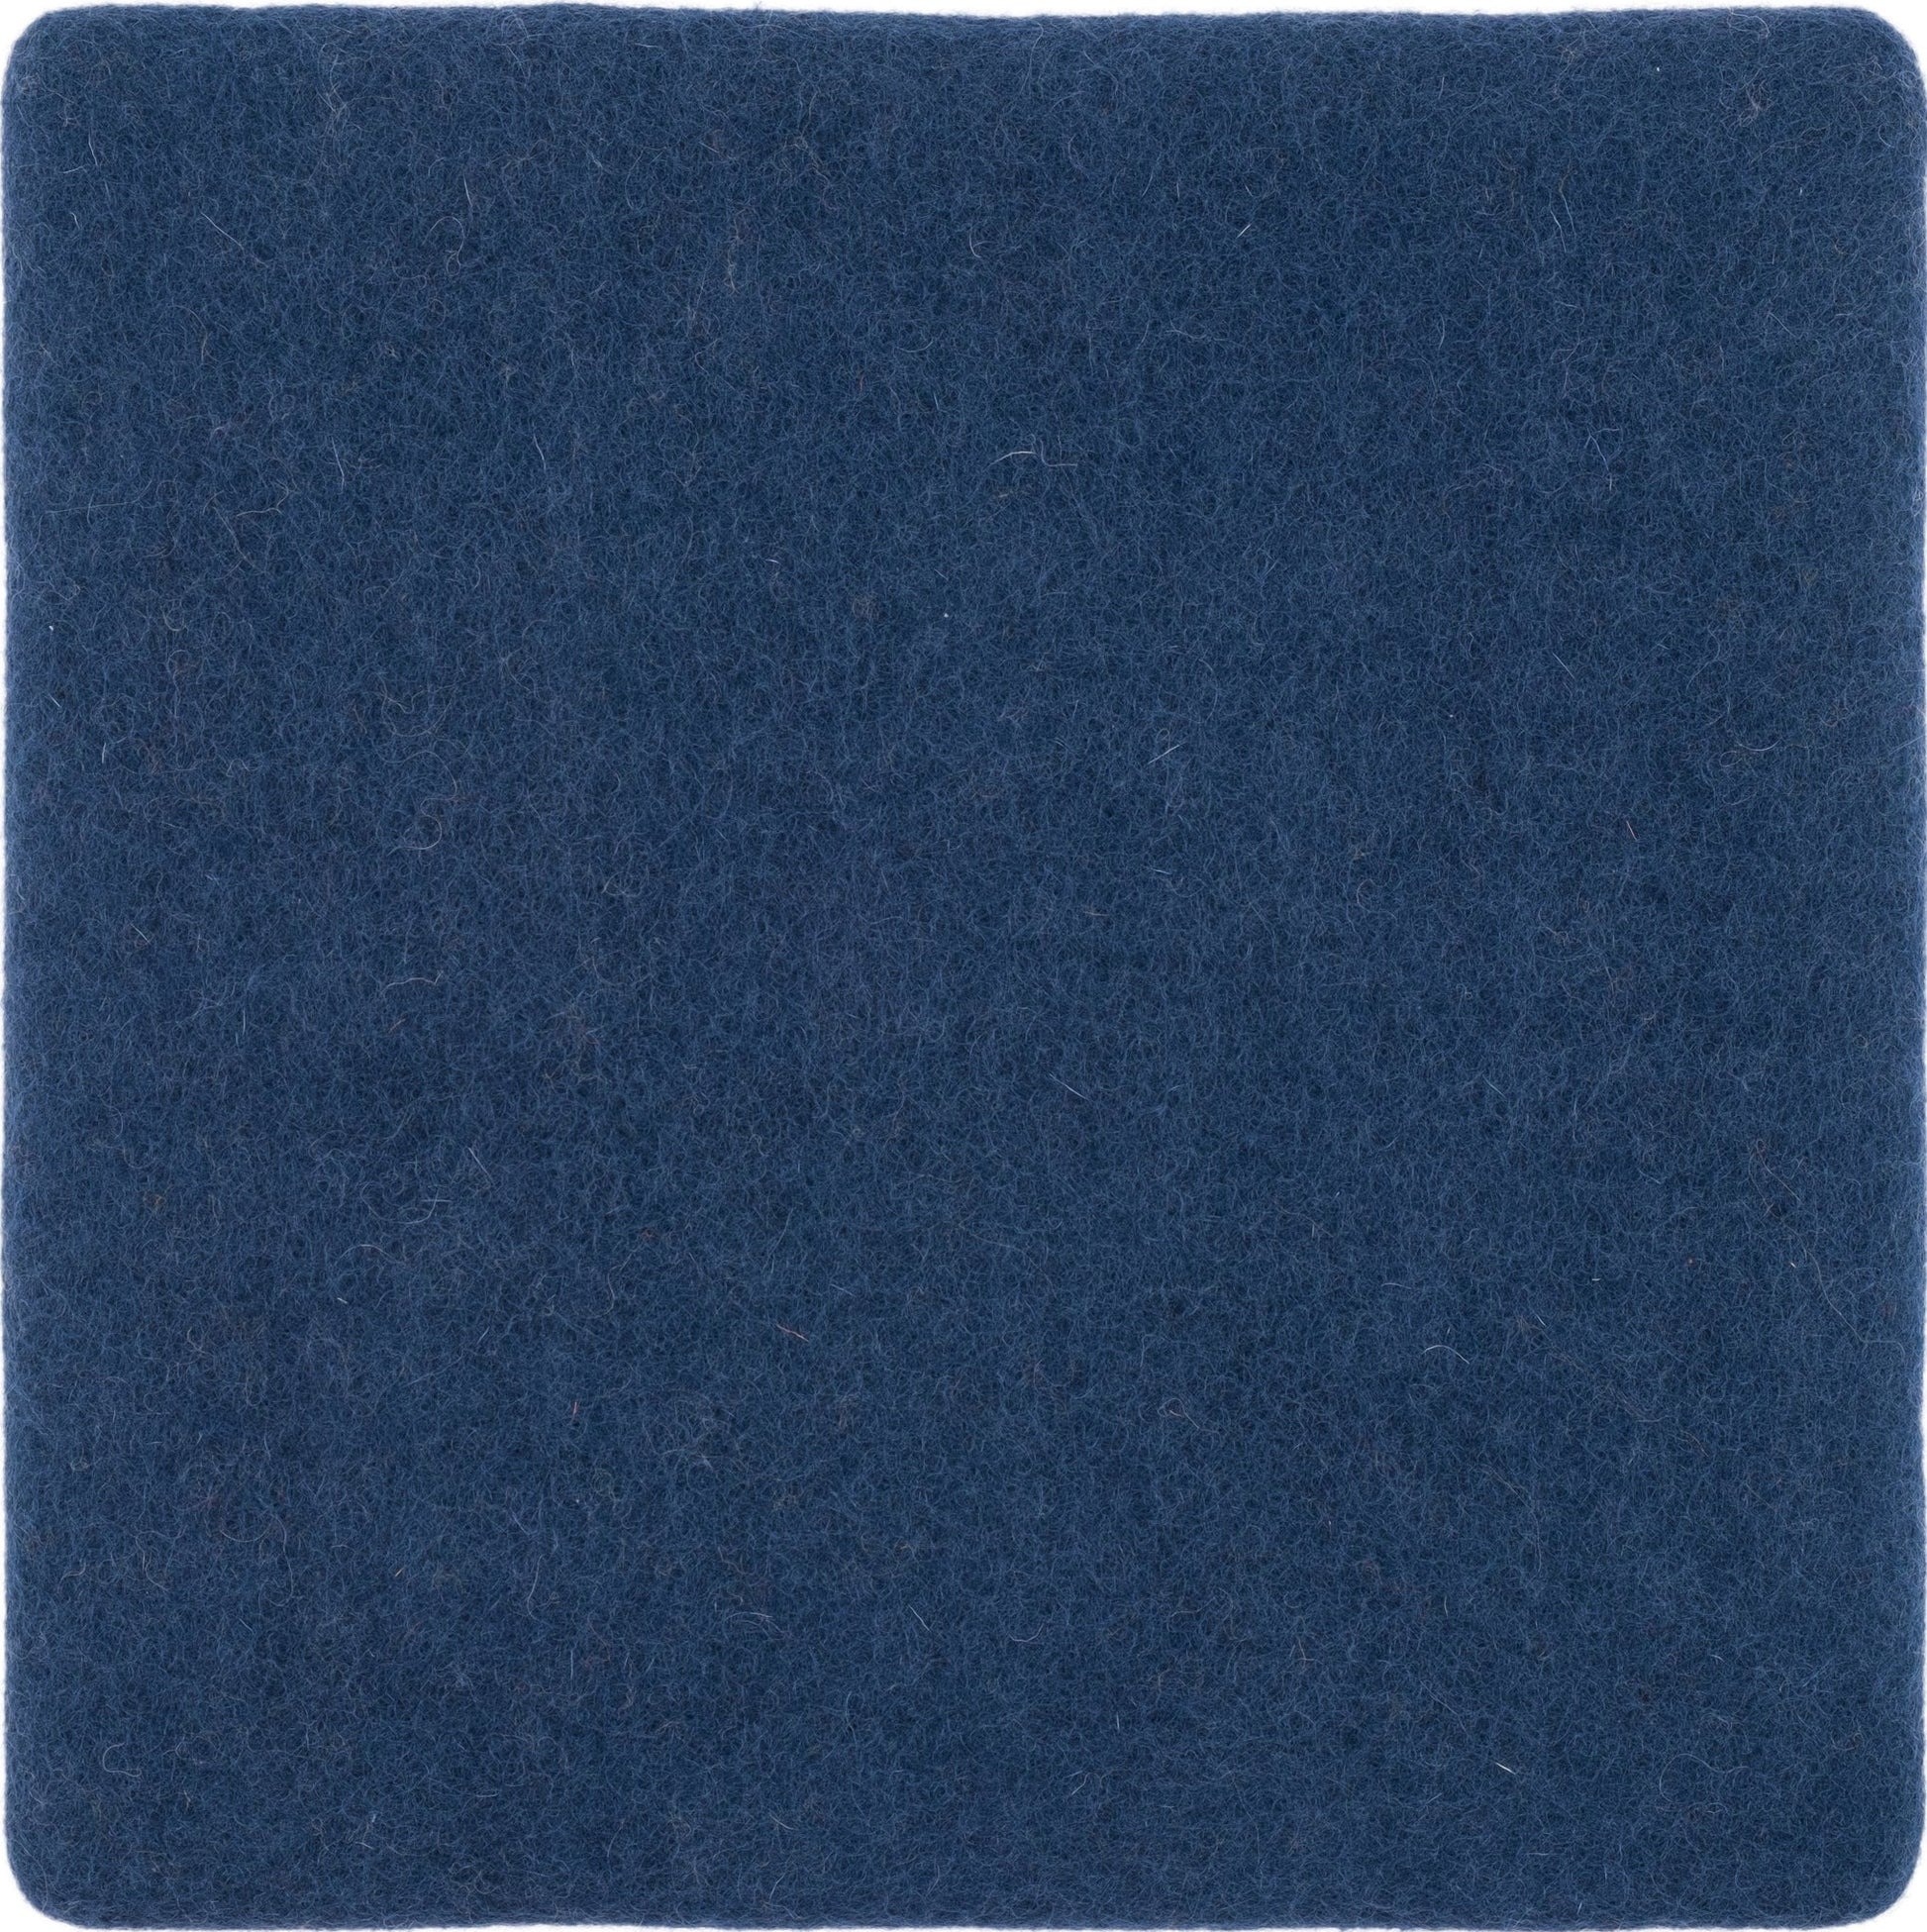 flache Sitzauflage, Fb. Alva (dunkelblau)